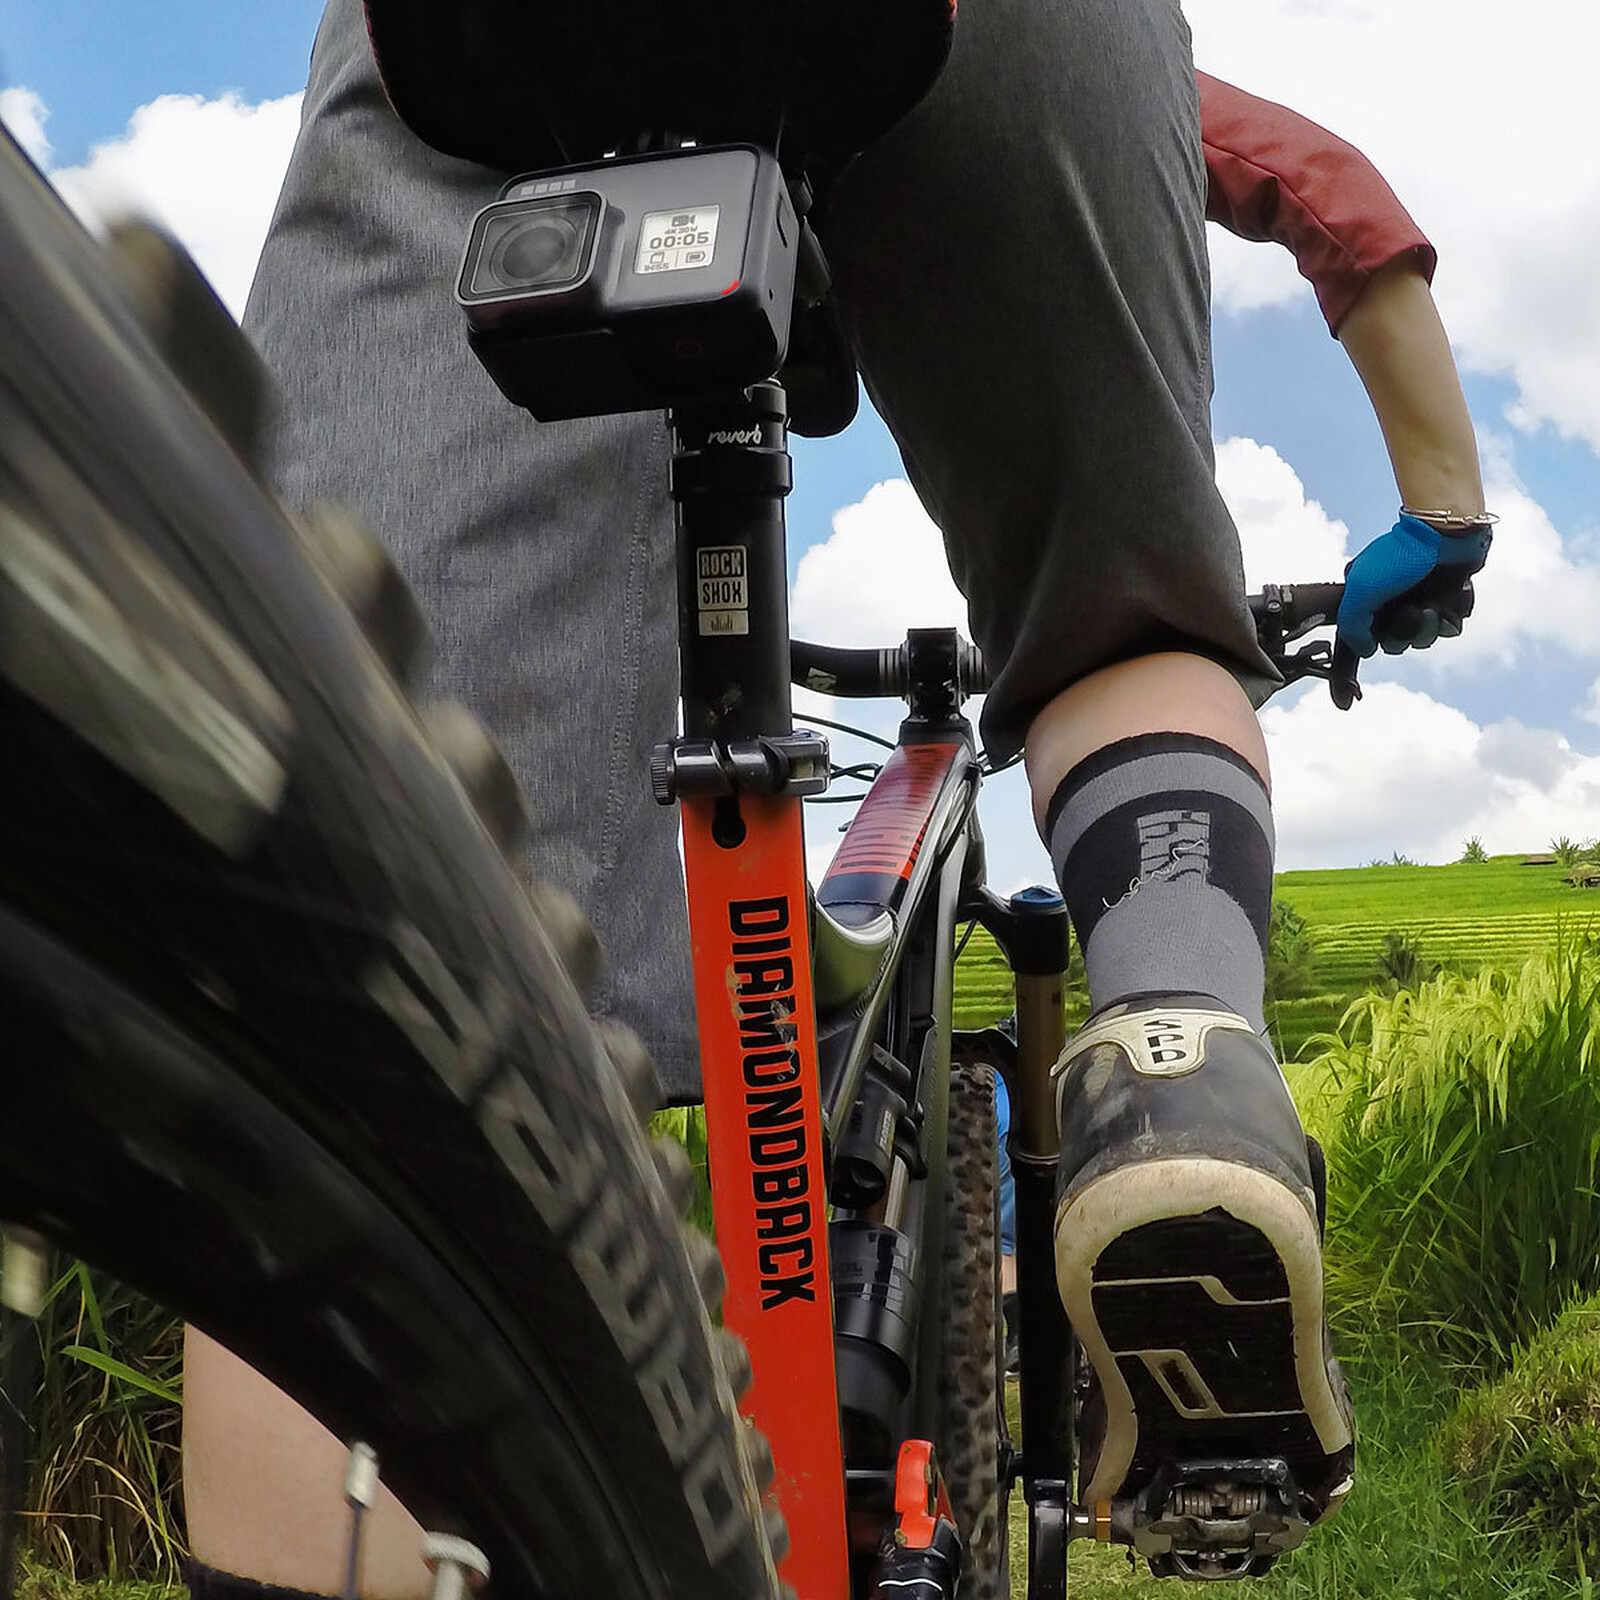 GoPro Fixation Pro pour rail de selle vélo - Accessoires caméra